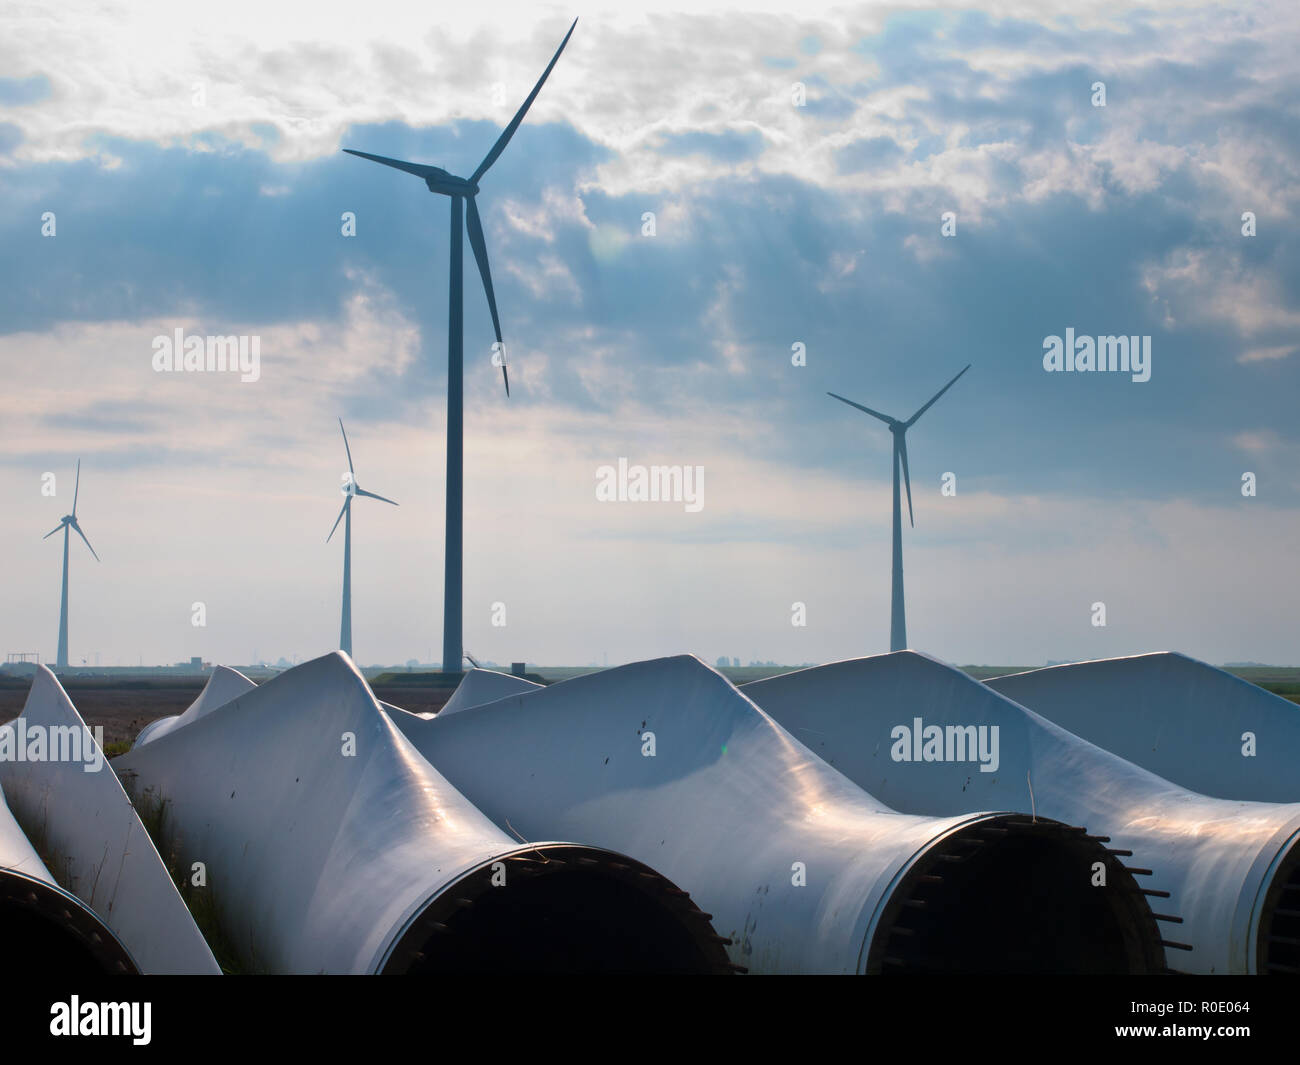 Las paletas de las turbinas eólicas en espera de asamblea en parque eólico Foto de stock